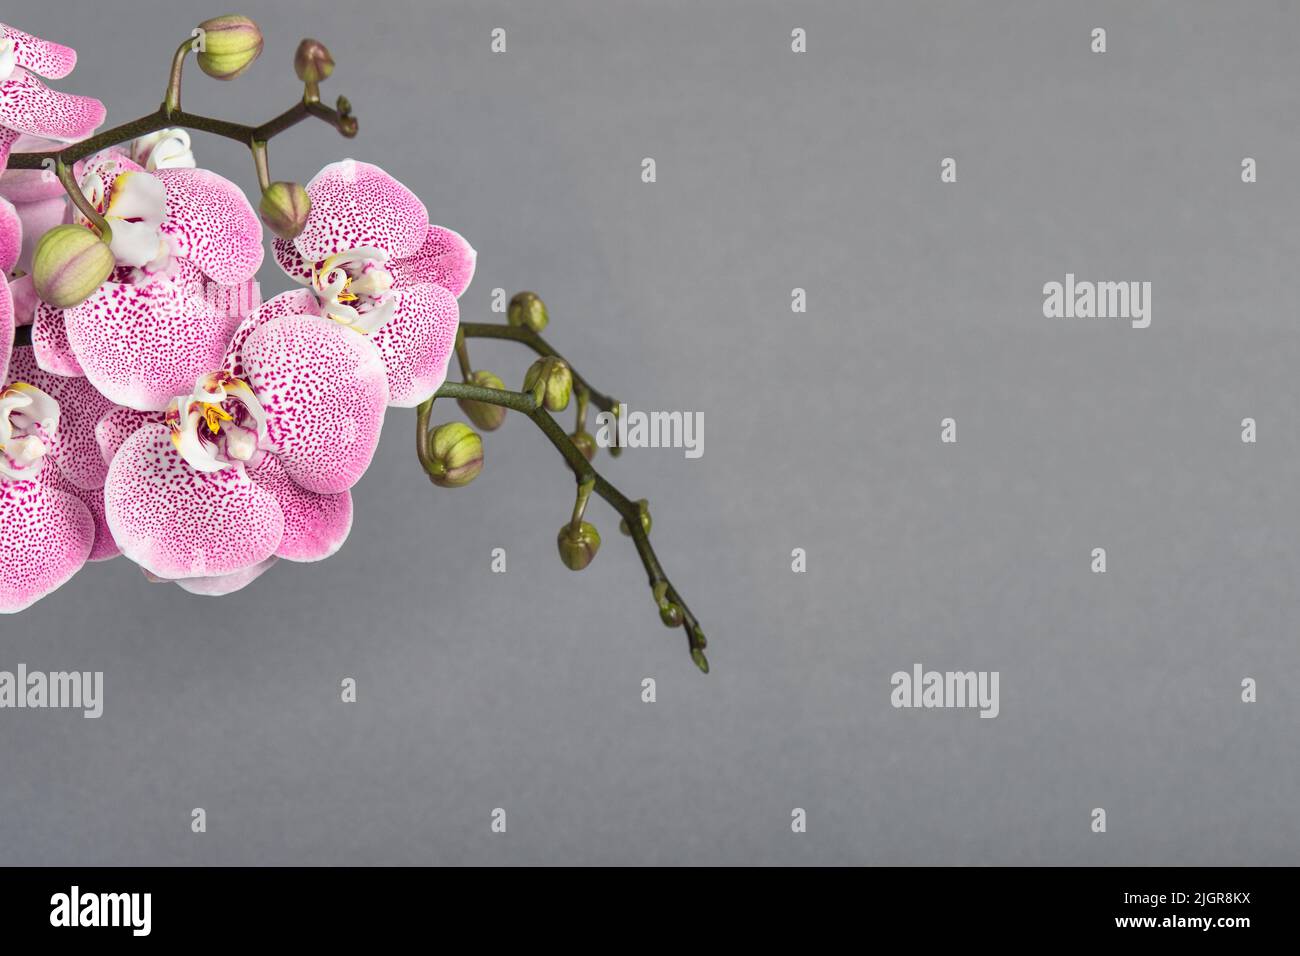 Bannière fleurie. Fleurs d'orchidées roses sur fond gris Banque D'Images